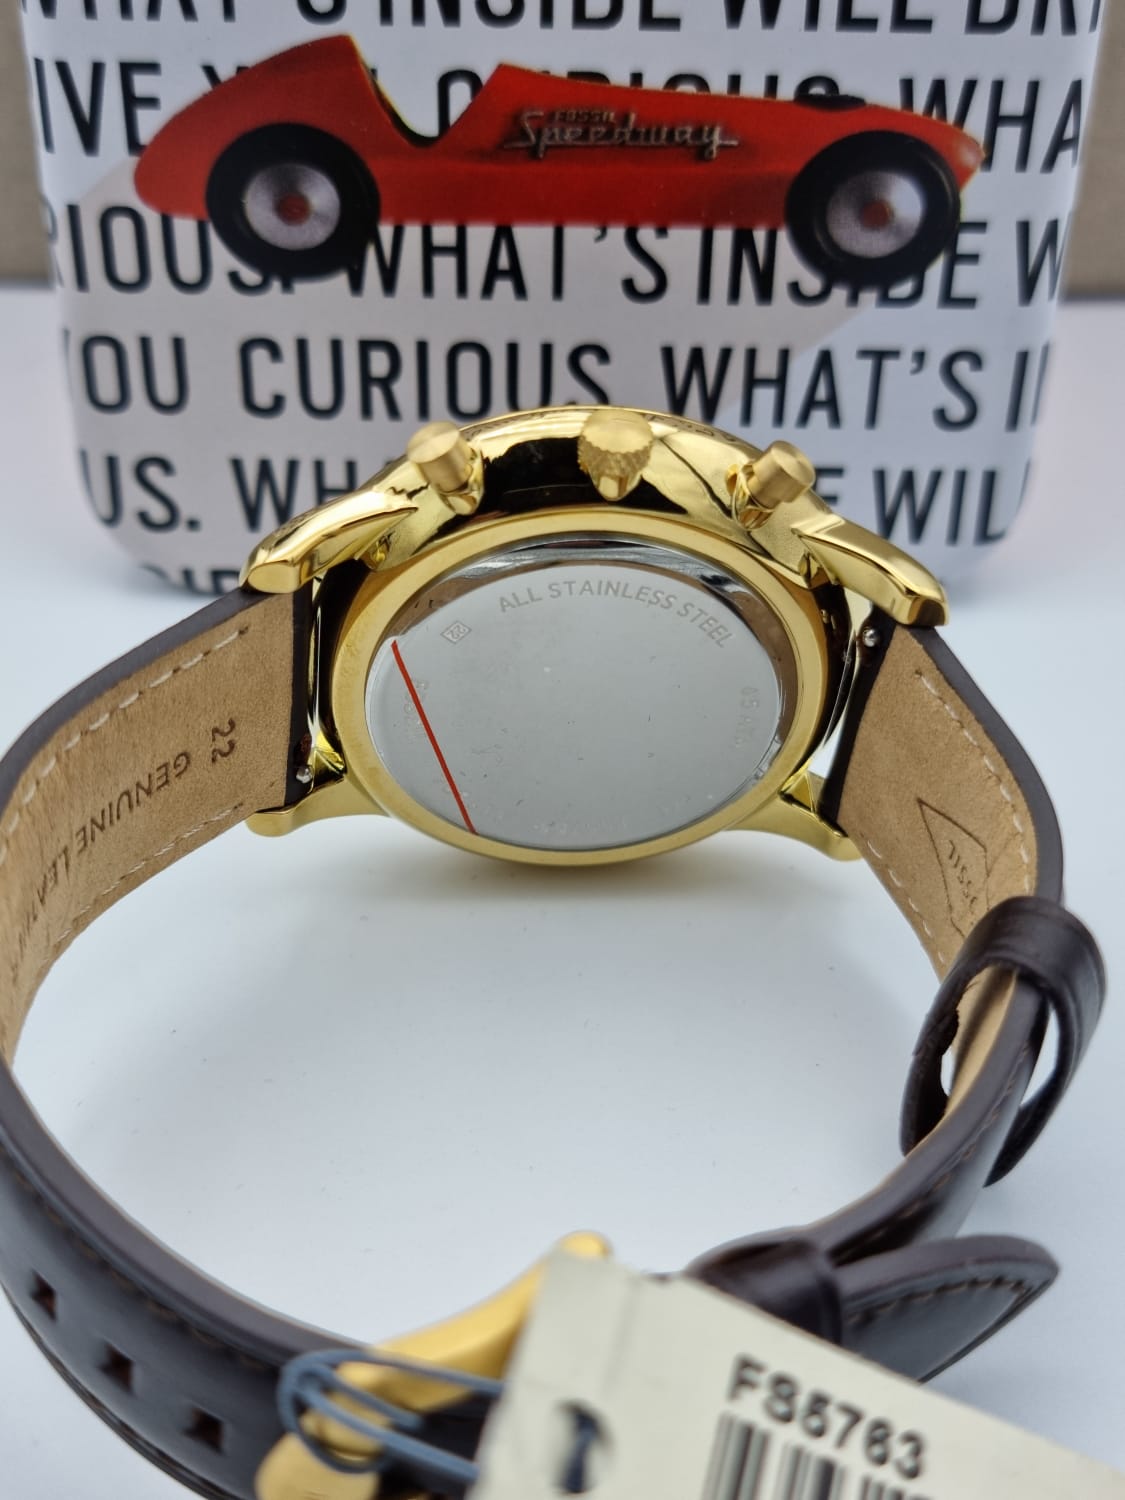 [Den niedrigsten Preis herausfordern!] Fossil Neutra Brown Leather Watch FS5763 Chronograph